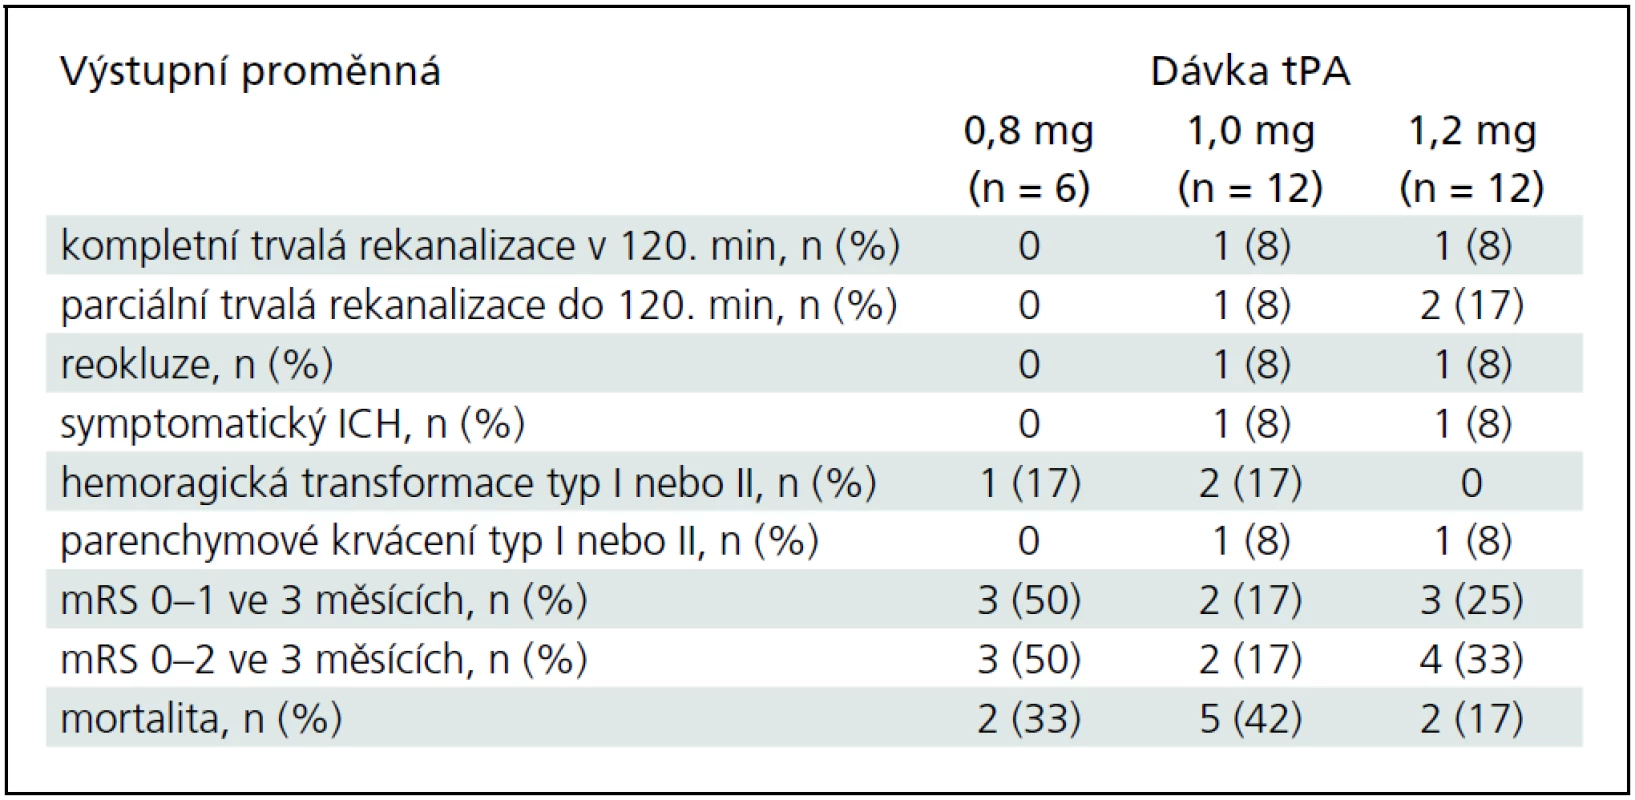 Výsledný stav pacientů léčených dávkami 0,8; 1,0 a 1,2 mg/kg intravenózní tPA.